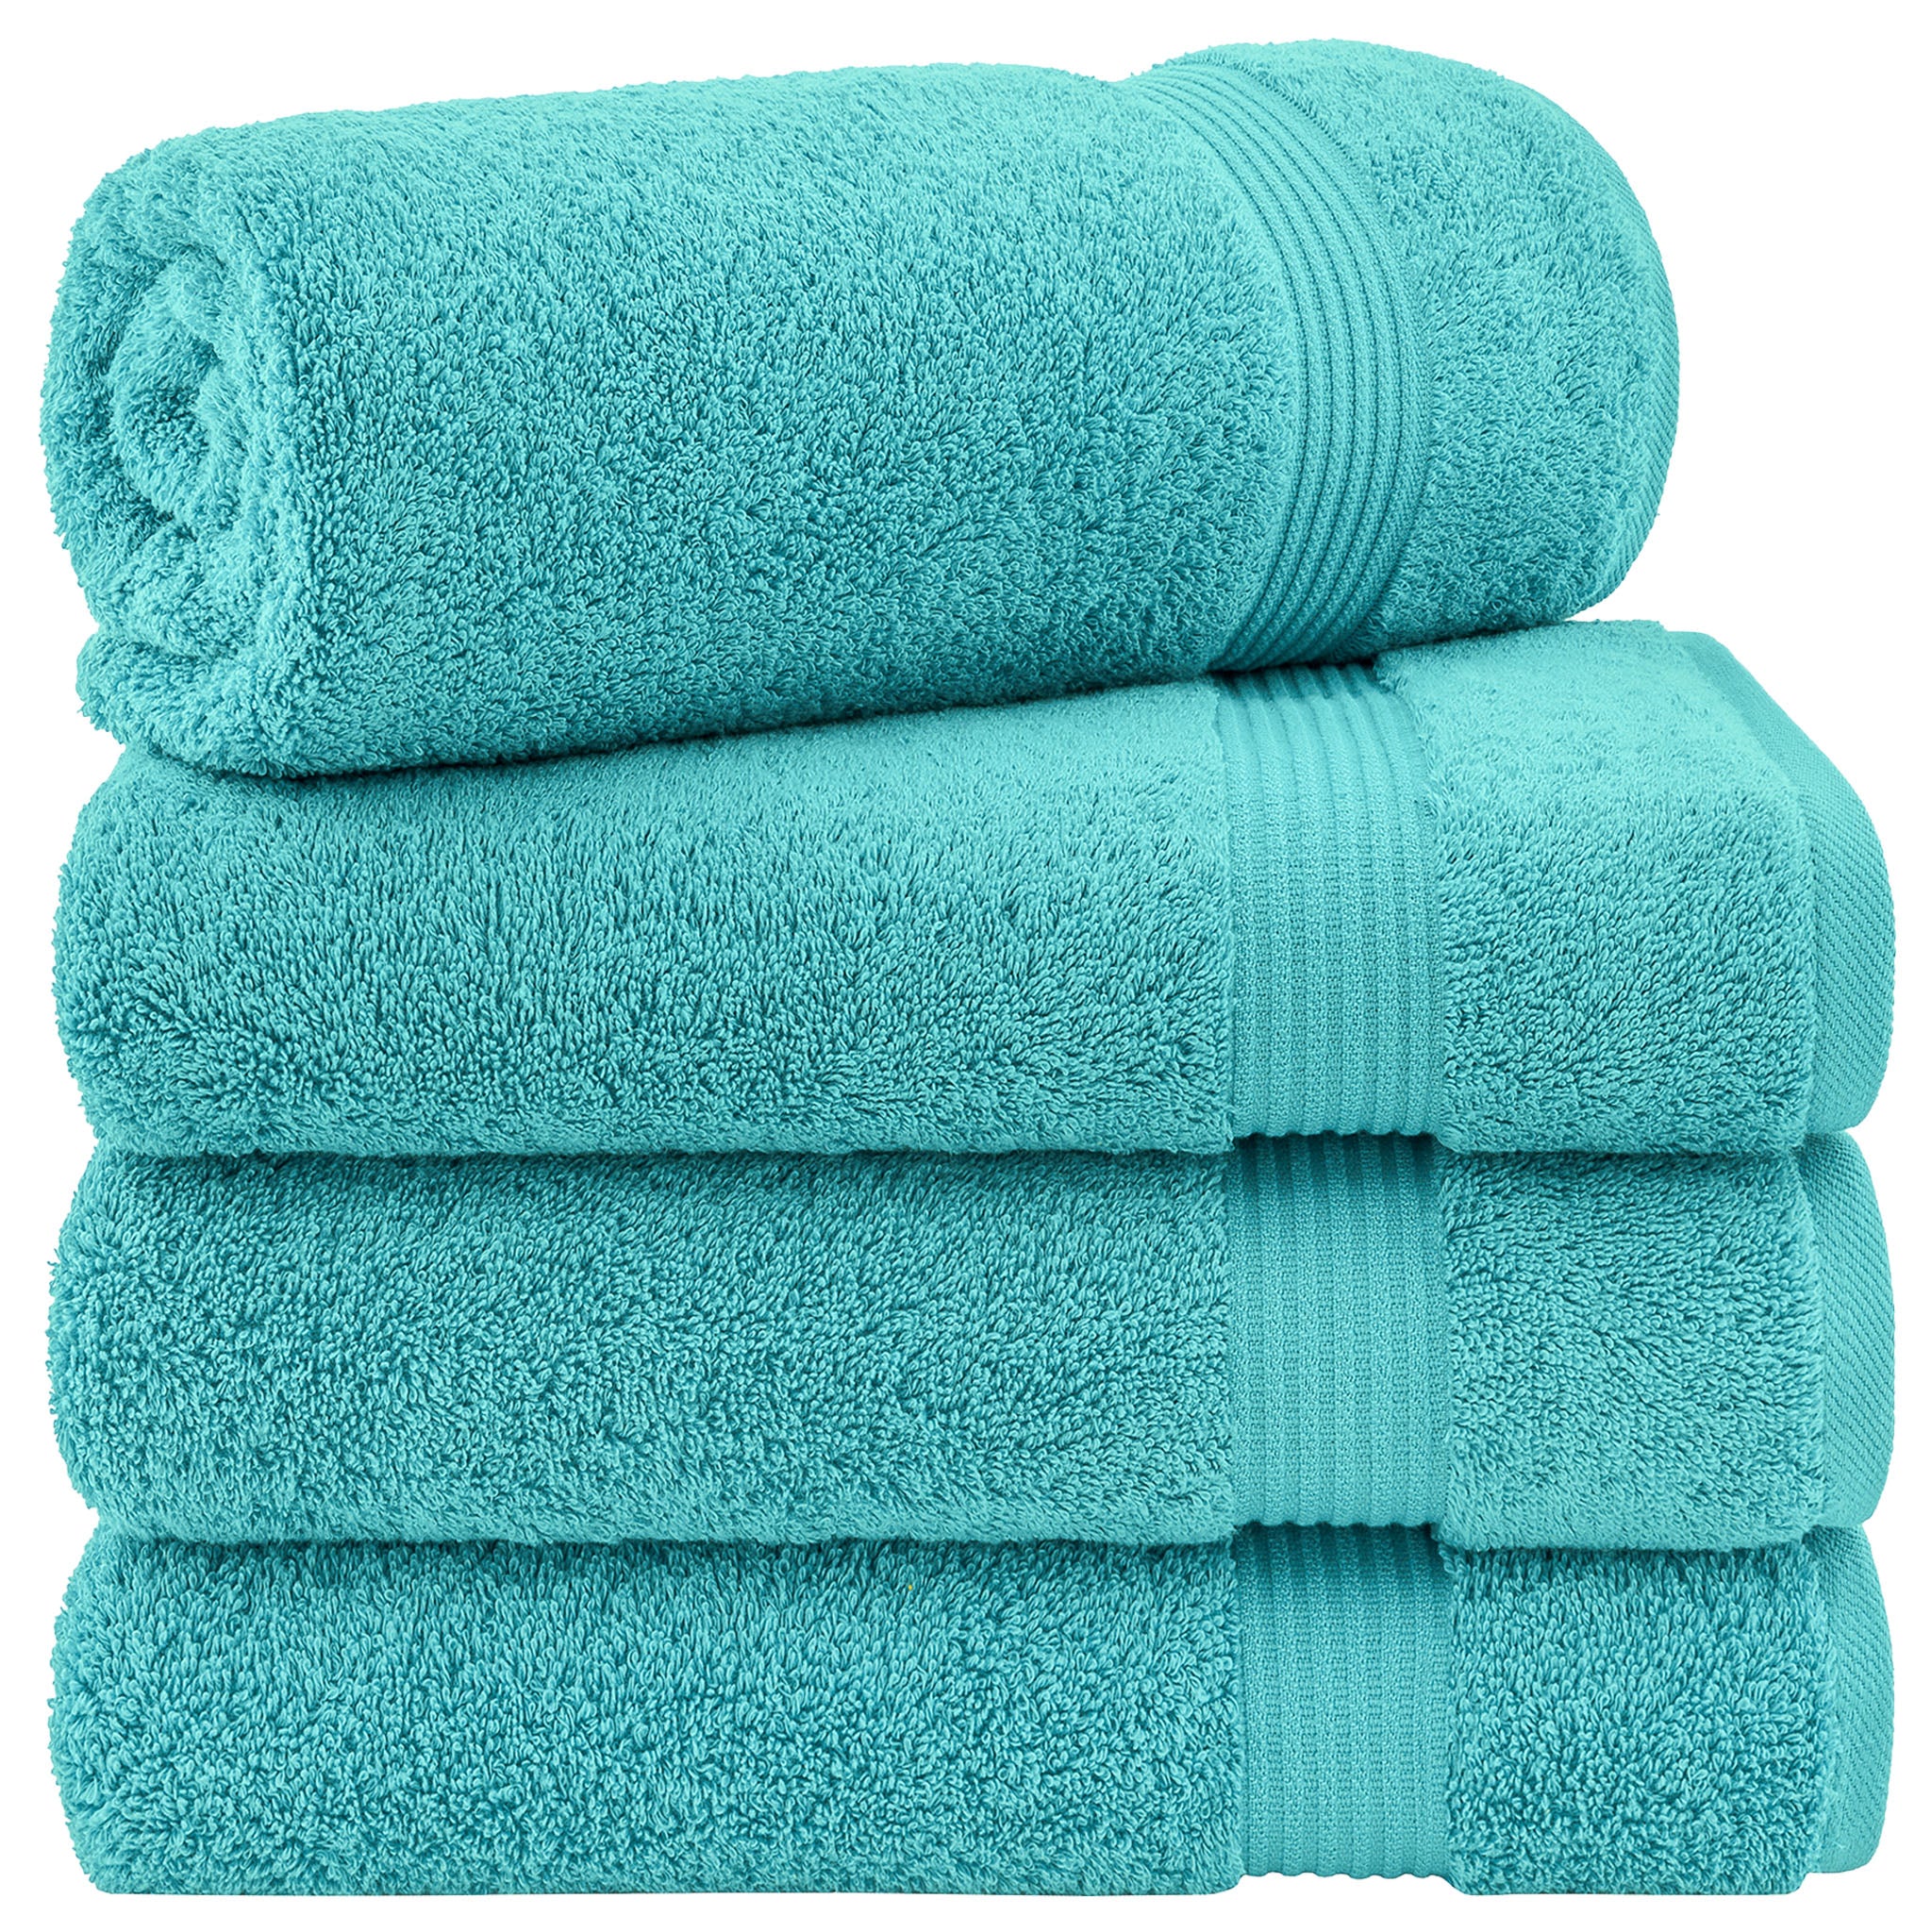 American Soft Linen Bekos 100% Cotton Turkish Towels, 4 Piece Bath Towel Set -turquoise-blue-01